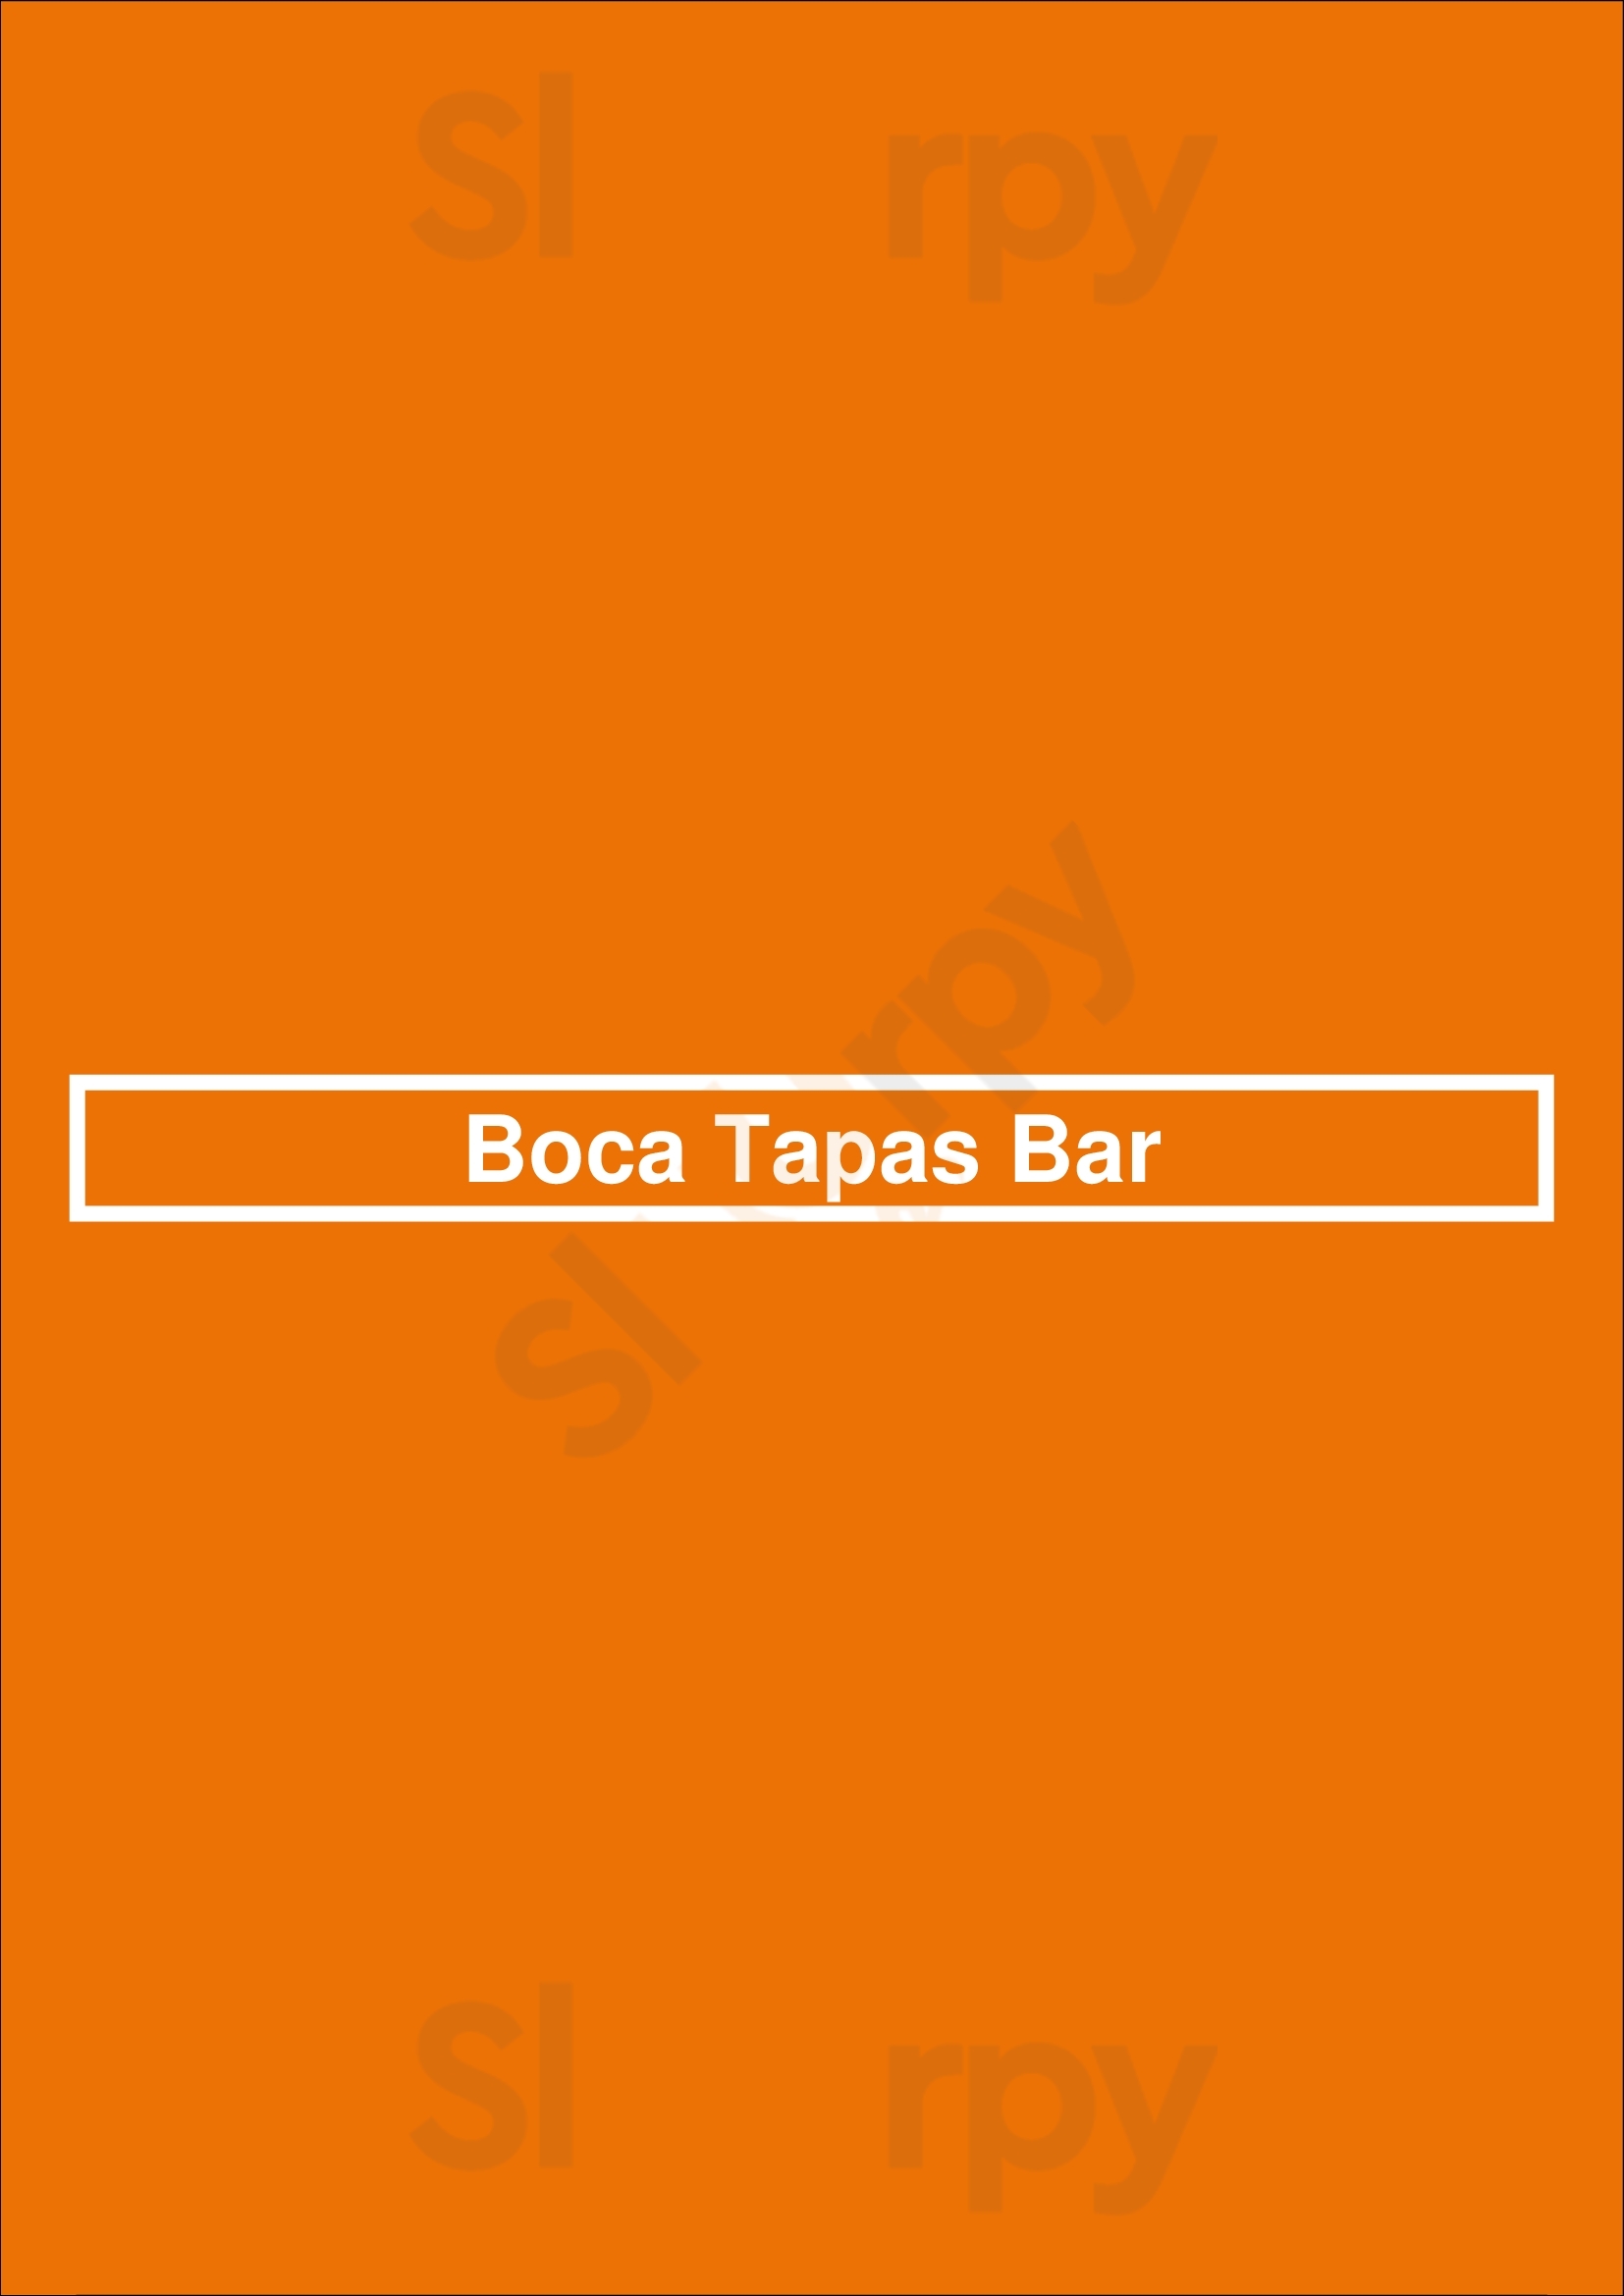 Boca Tapas Bar St. John's Menu - 1